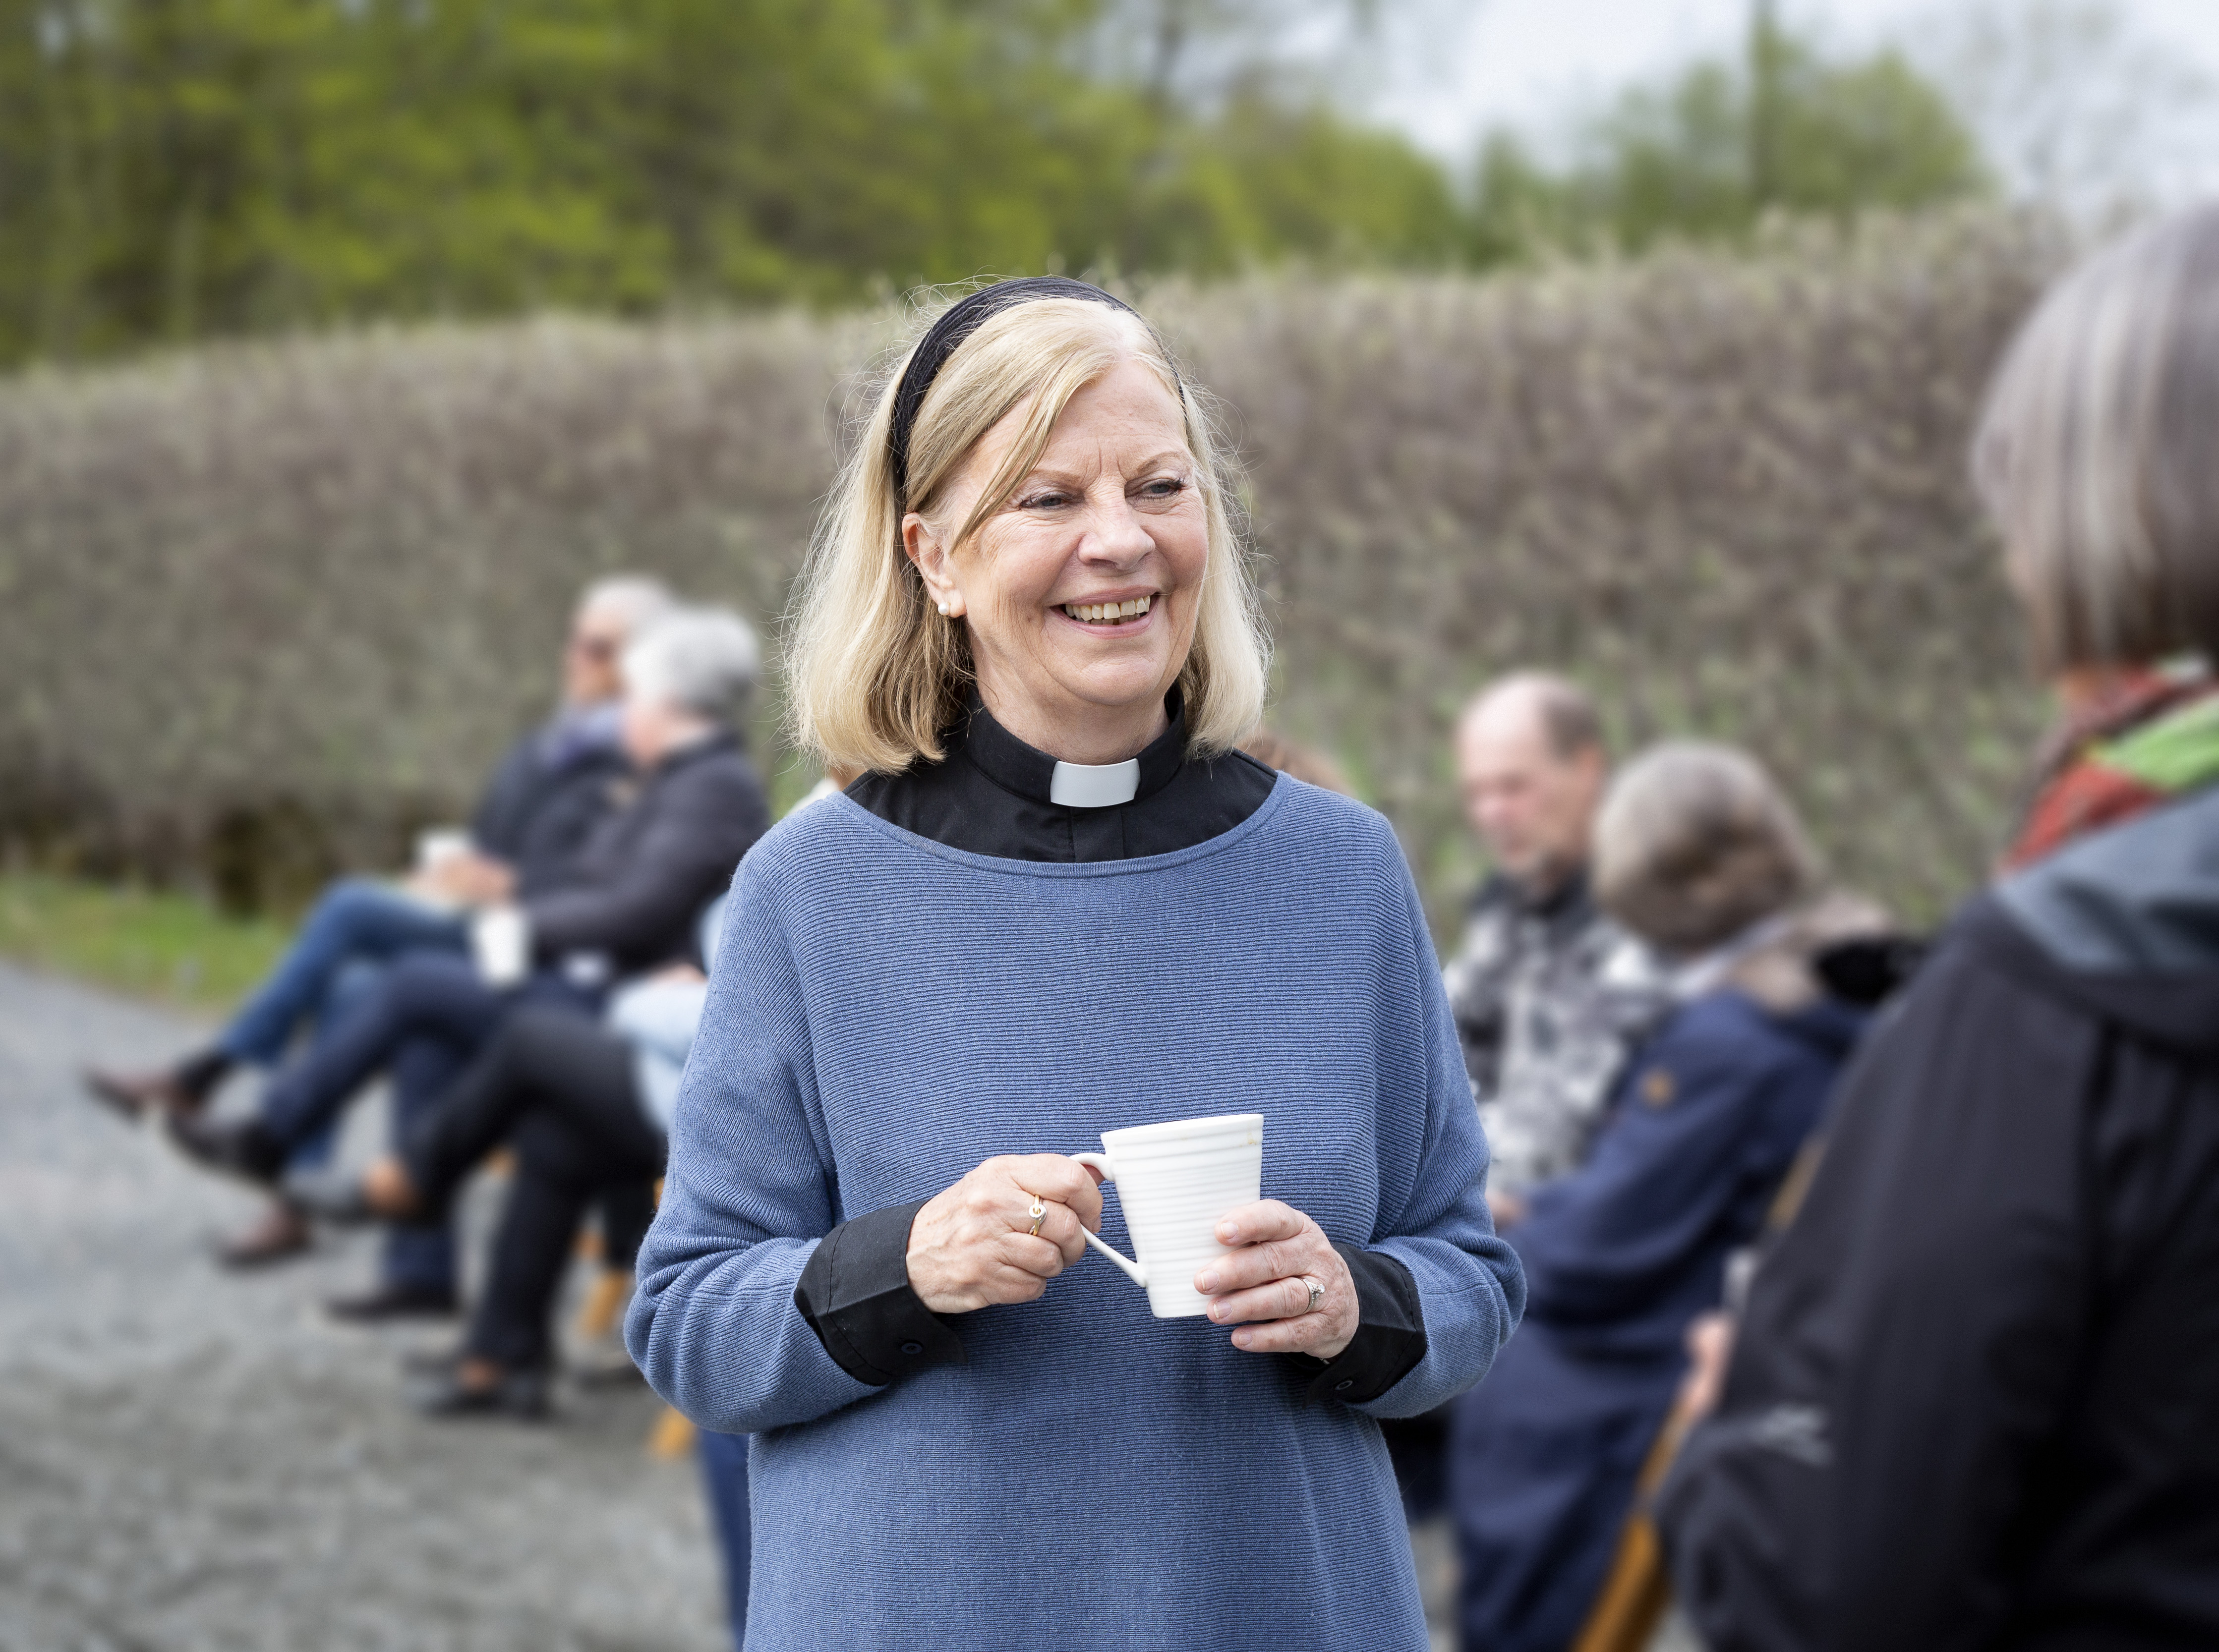 En kvinnlig präst står utomhus med en kaffemugg i handen och samtalar leende med någon.